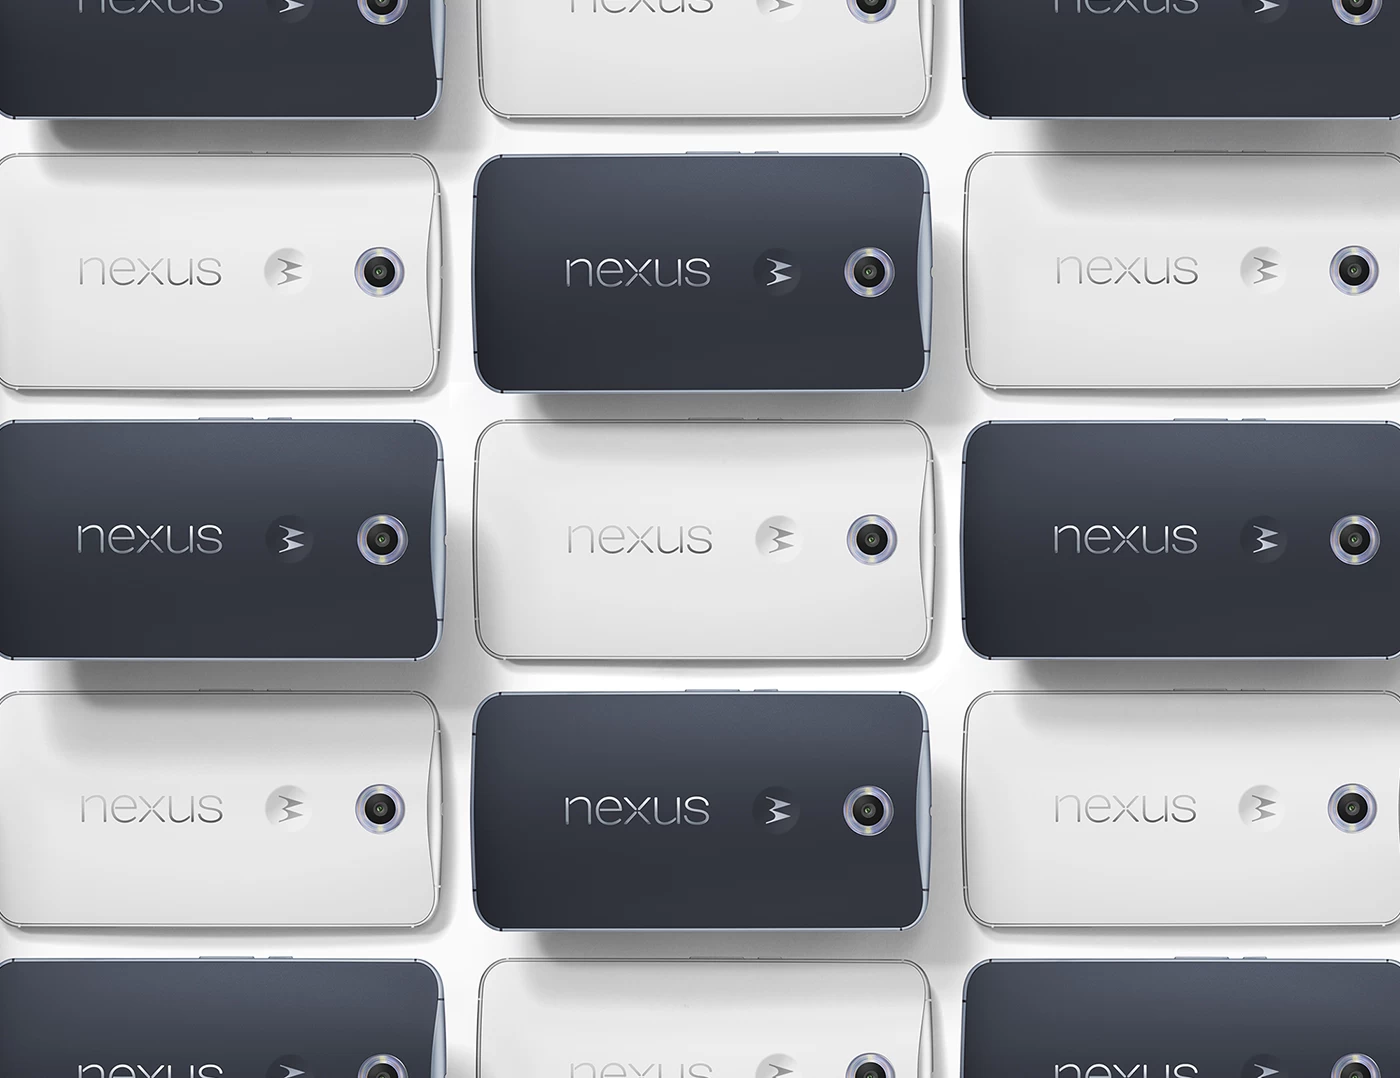 nexus 6 | Nexus | Google ปล่อยวีดีโอ Introduce แนะนำอุปกรณ์ใหม่ทั้งสามตัว Nexus 6, Nexus 9 และ Nexus Player